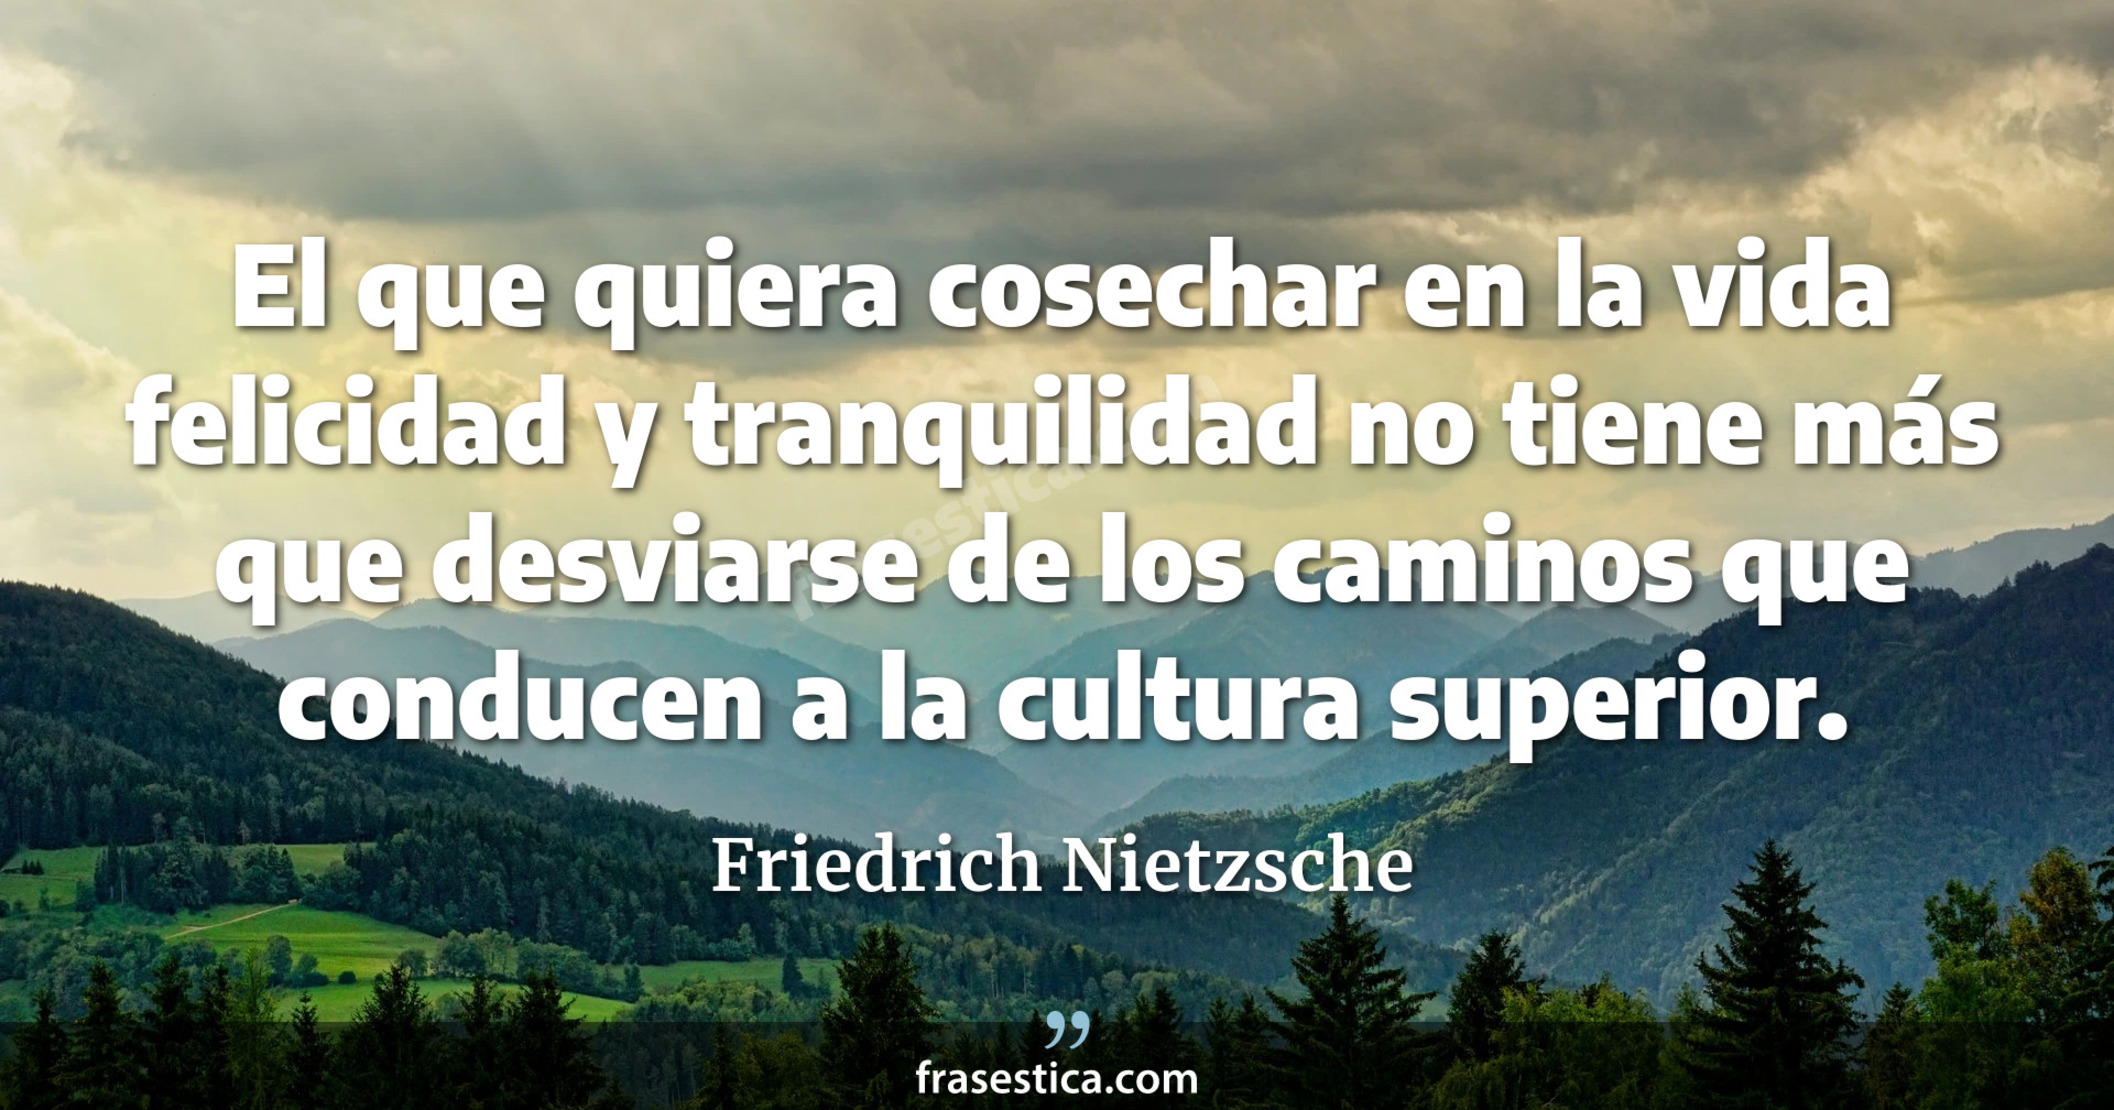 El que quiera cosechar en la vida felicidad y tranquilidad no tiene más que desviarse de los caminos que conducen a la cultura superior. - Friedrich Nietzsche